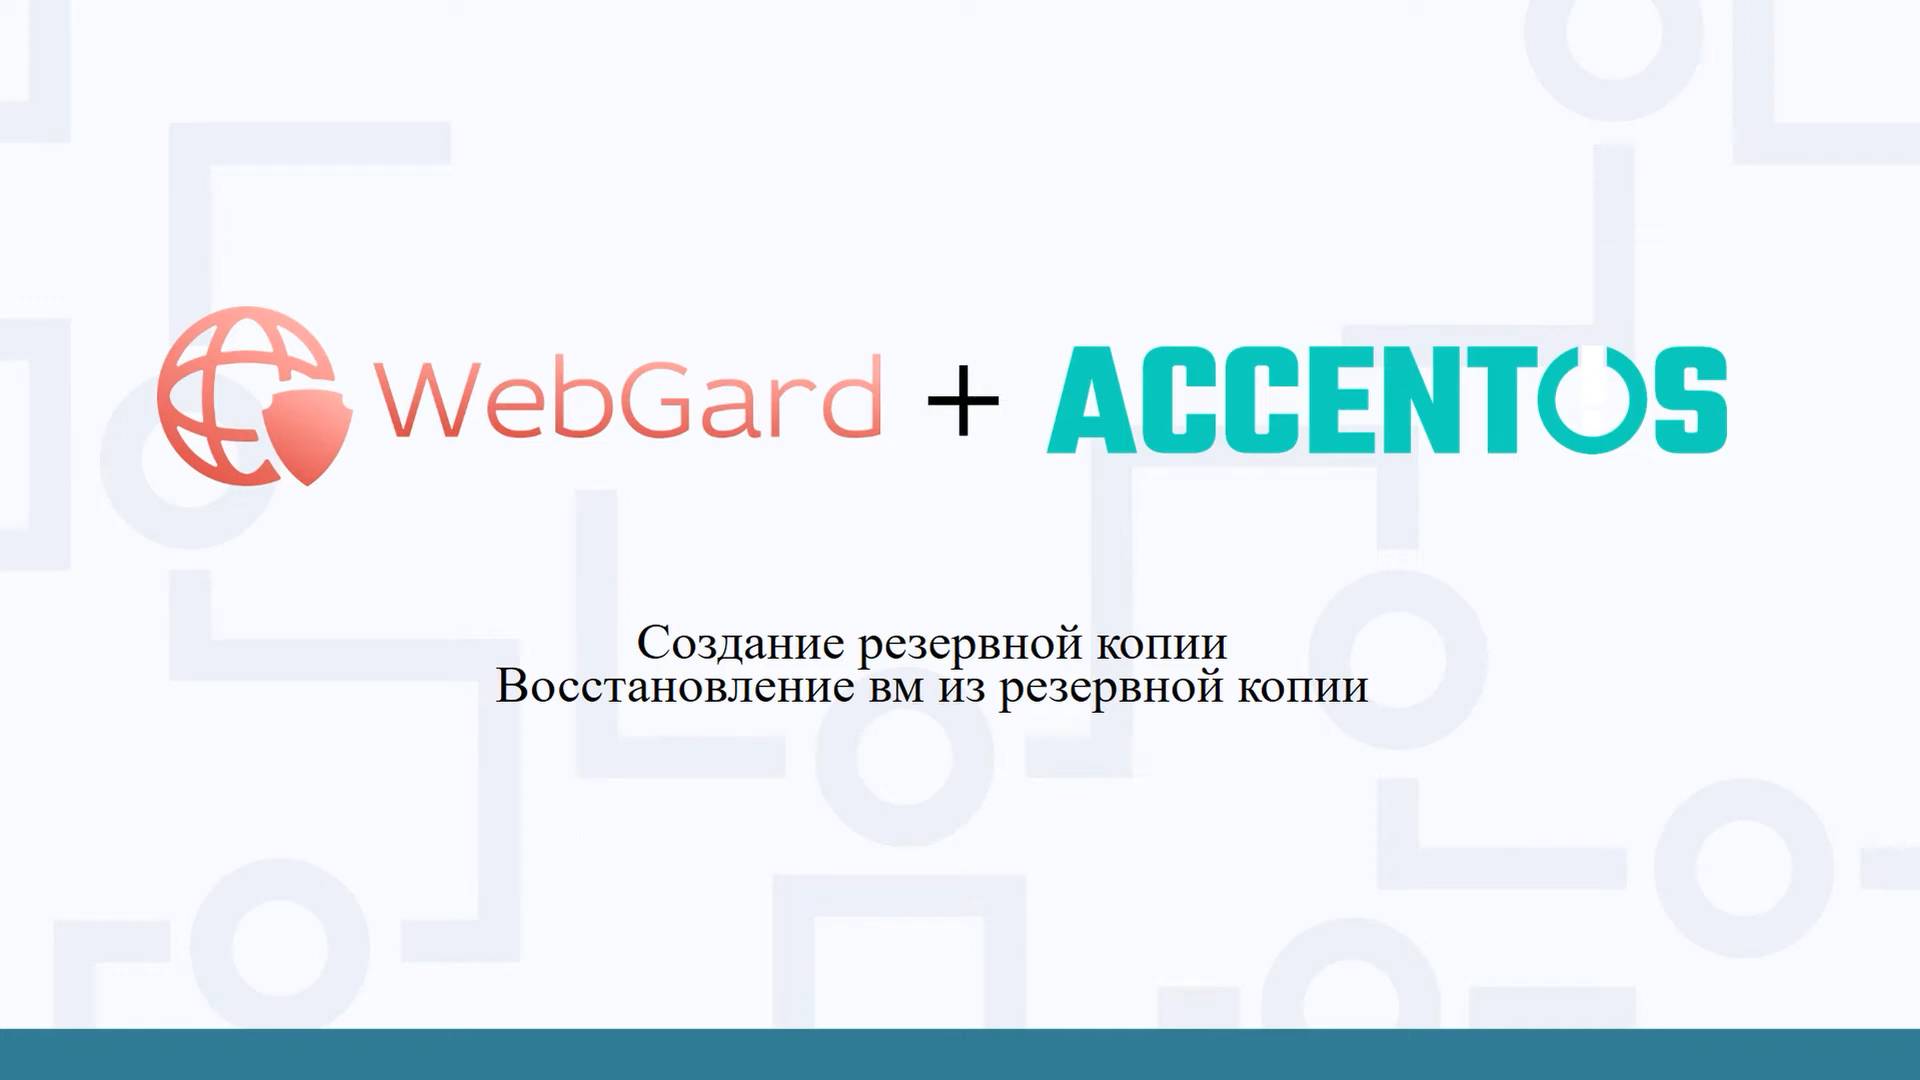 Создание резервной копии WebGard 2.0 в AccentOS